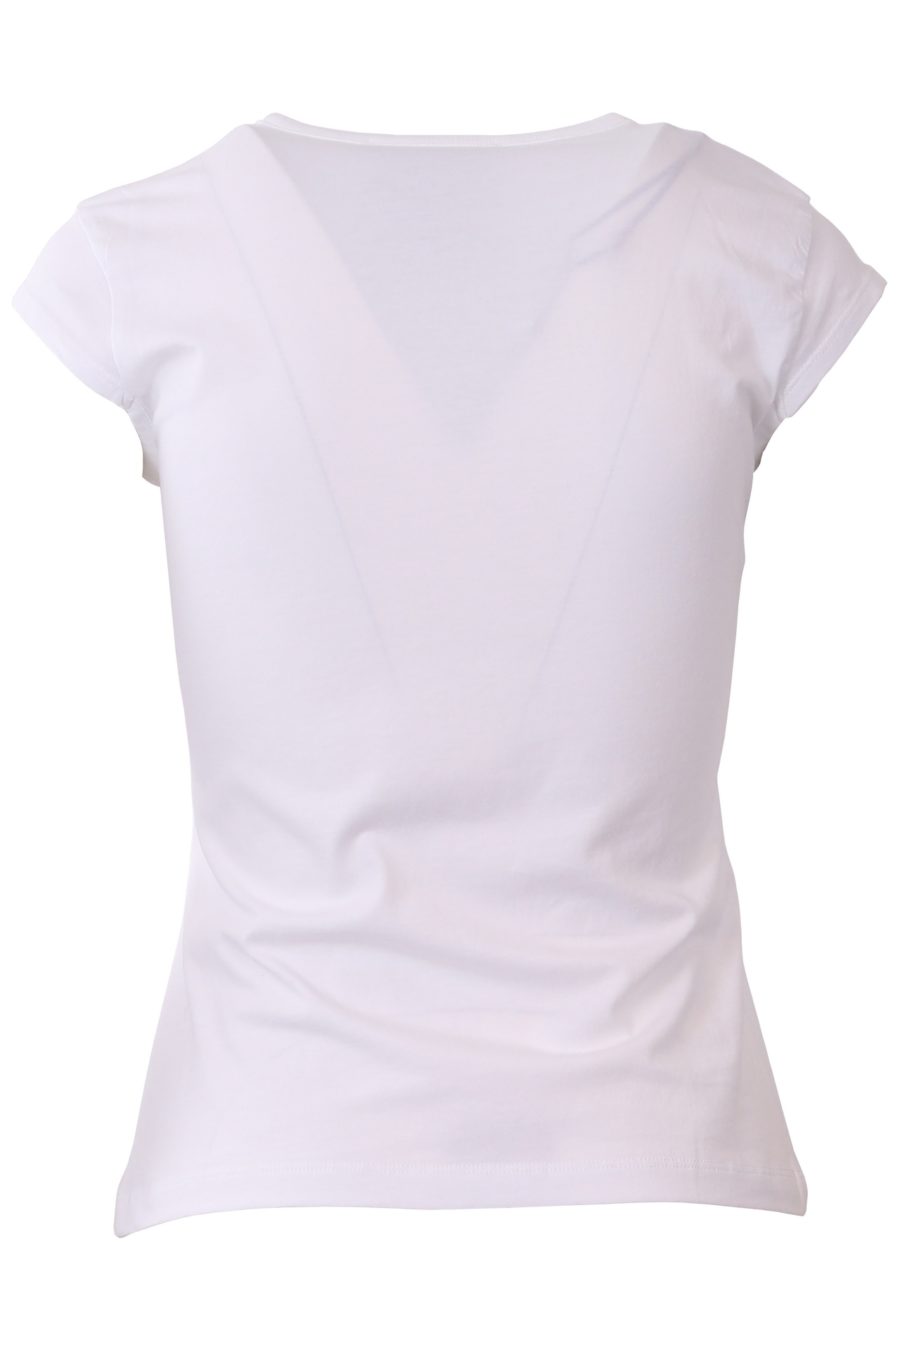 Camiseta Moschino Couture blanca con oso italiano - cb6df7e9e6bcd90dbfb0ca36e76dcefd699a5030